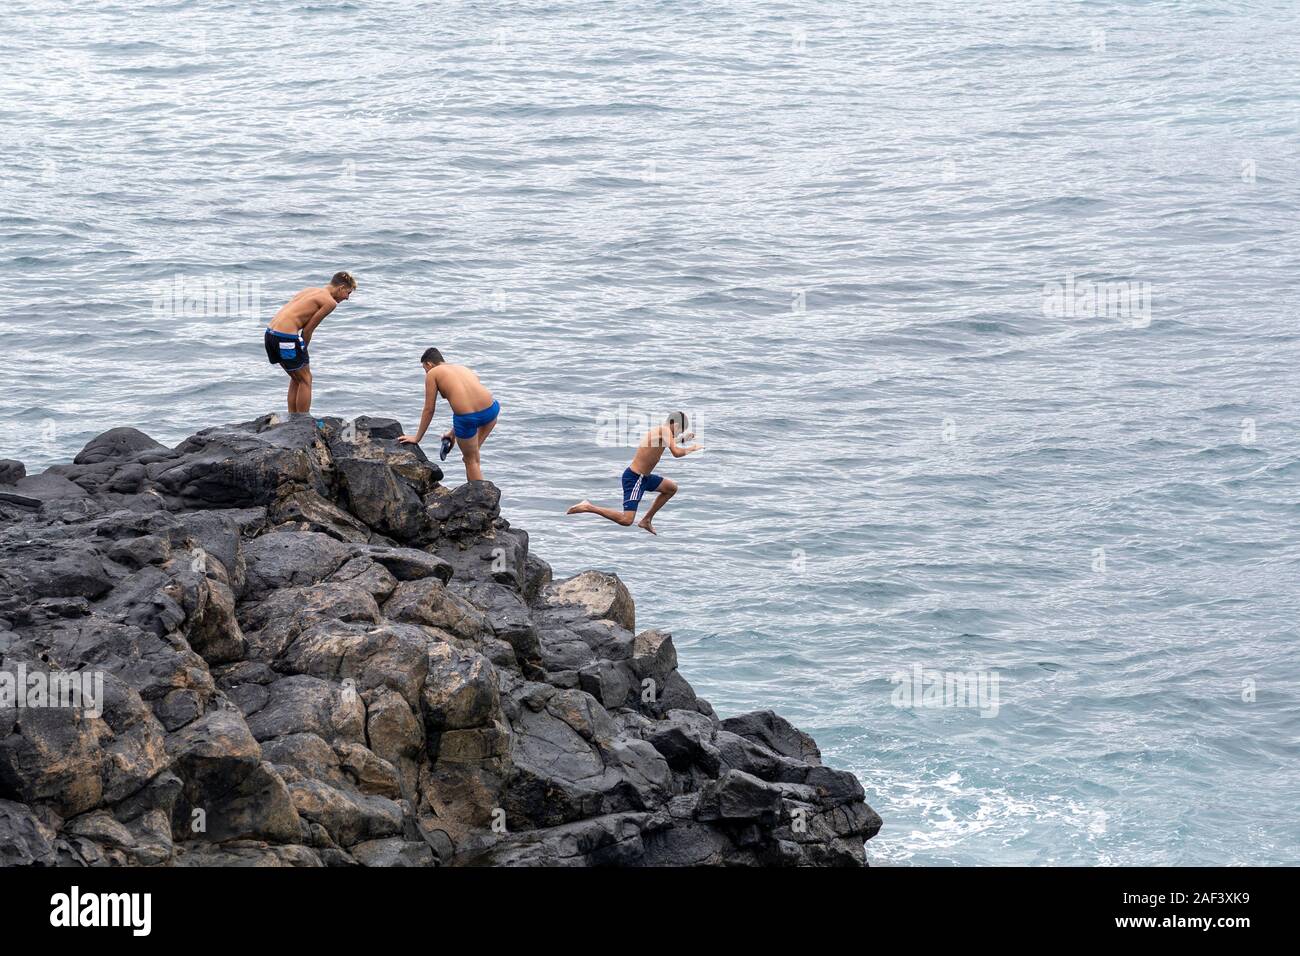 Las Palmas, Gran Canaria, Nov, 2019:  Kids jumping into the ocean near Playa de las Canteras beach,  Las Palmas de Gran Canaria November 2019 Stock Photo